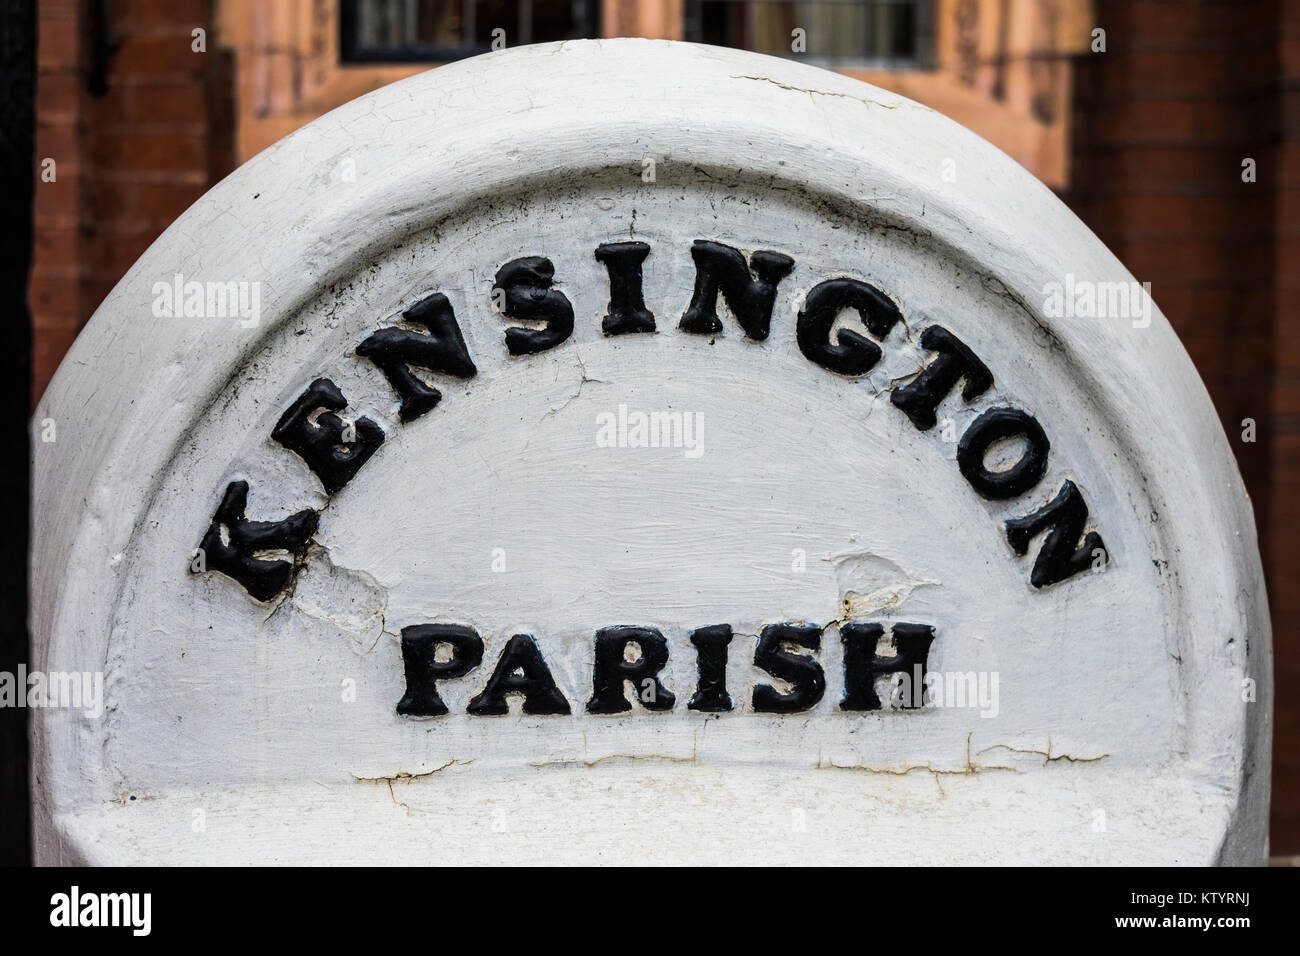 Paroisse de Kensington Road, marqueur de Royal Borough de Kensington & Chelsea, London, Angleterre, Royaume-Uni Banque D'Images